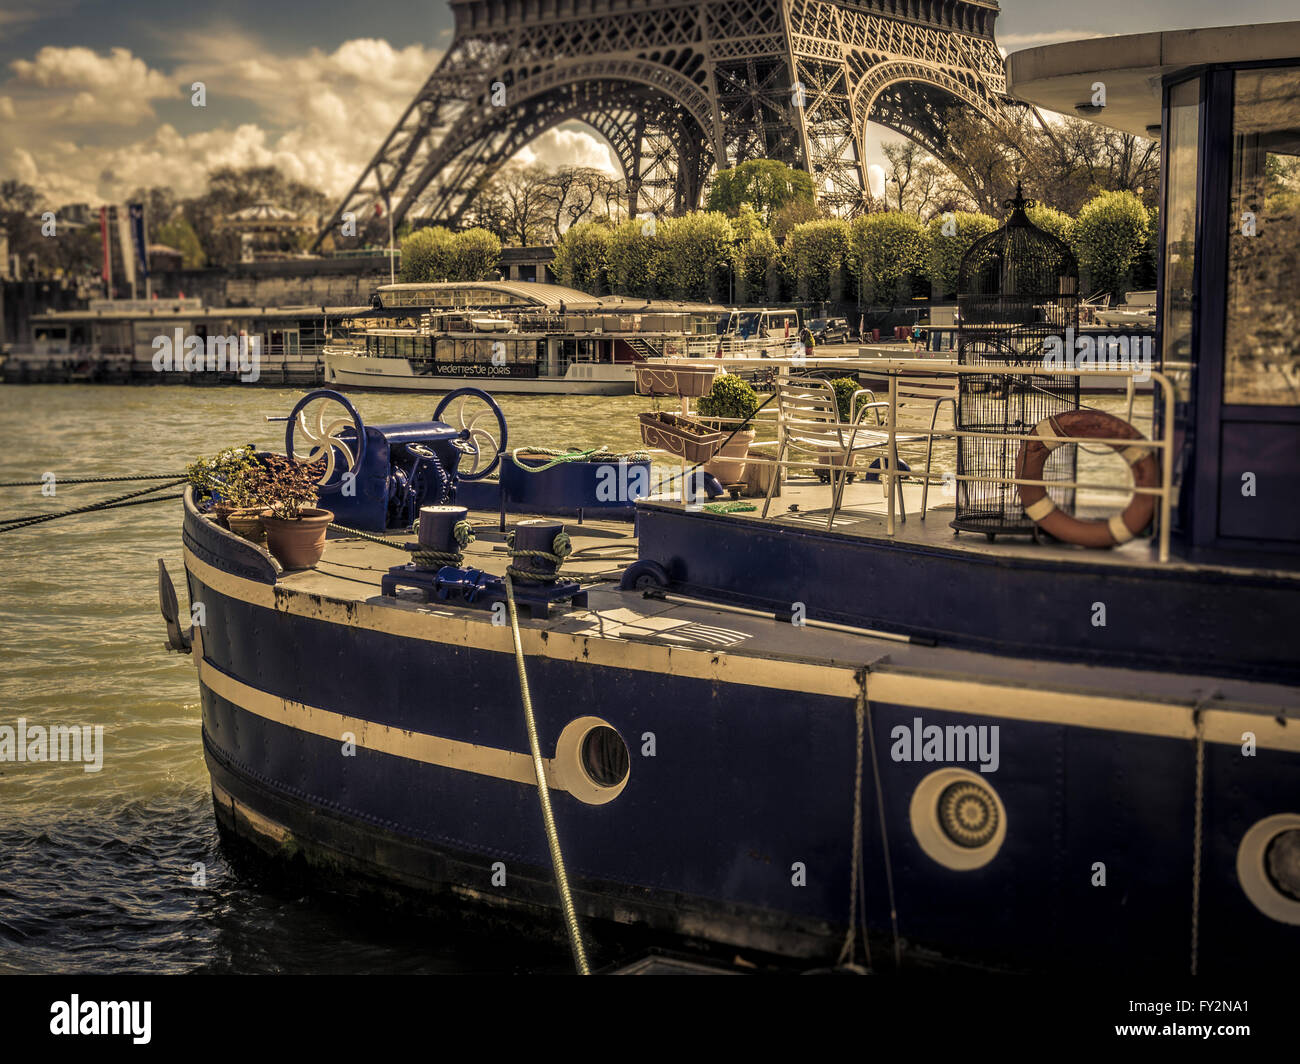 Bateaux sur la Seine à Paris, en France, avec la Tour Eiffel en arrière-plan Banque D'Images